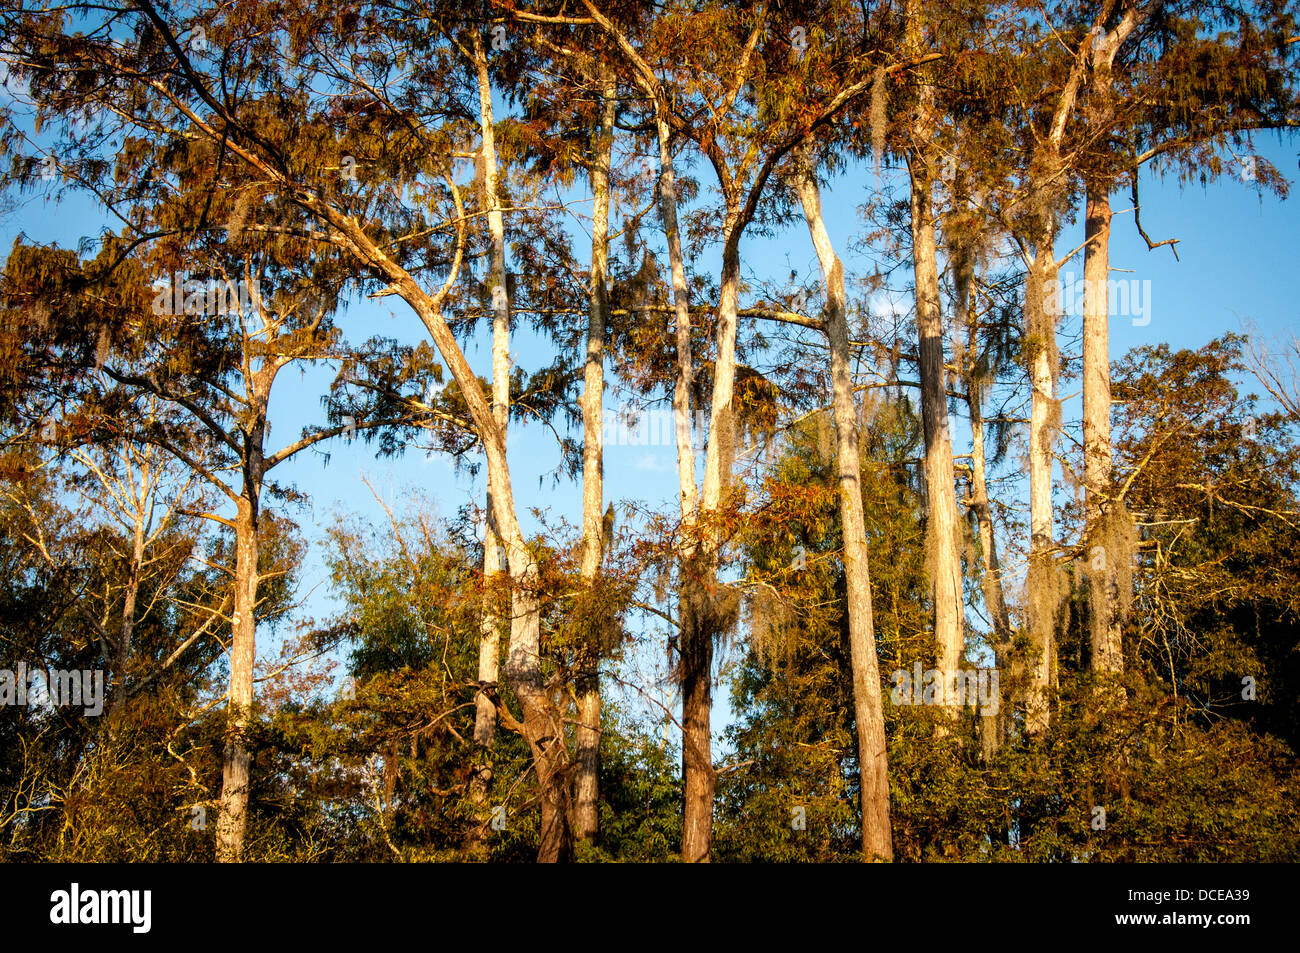 USA, Louisiana, Atchafalaya Basin, Pierce Lake at sunrise, bald cypress standing in water. Stock Photo